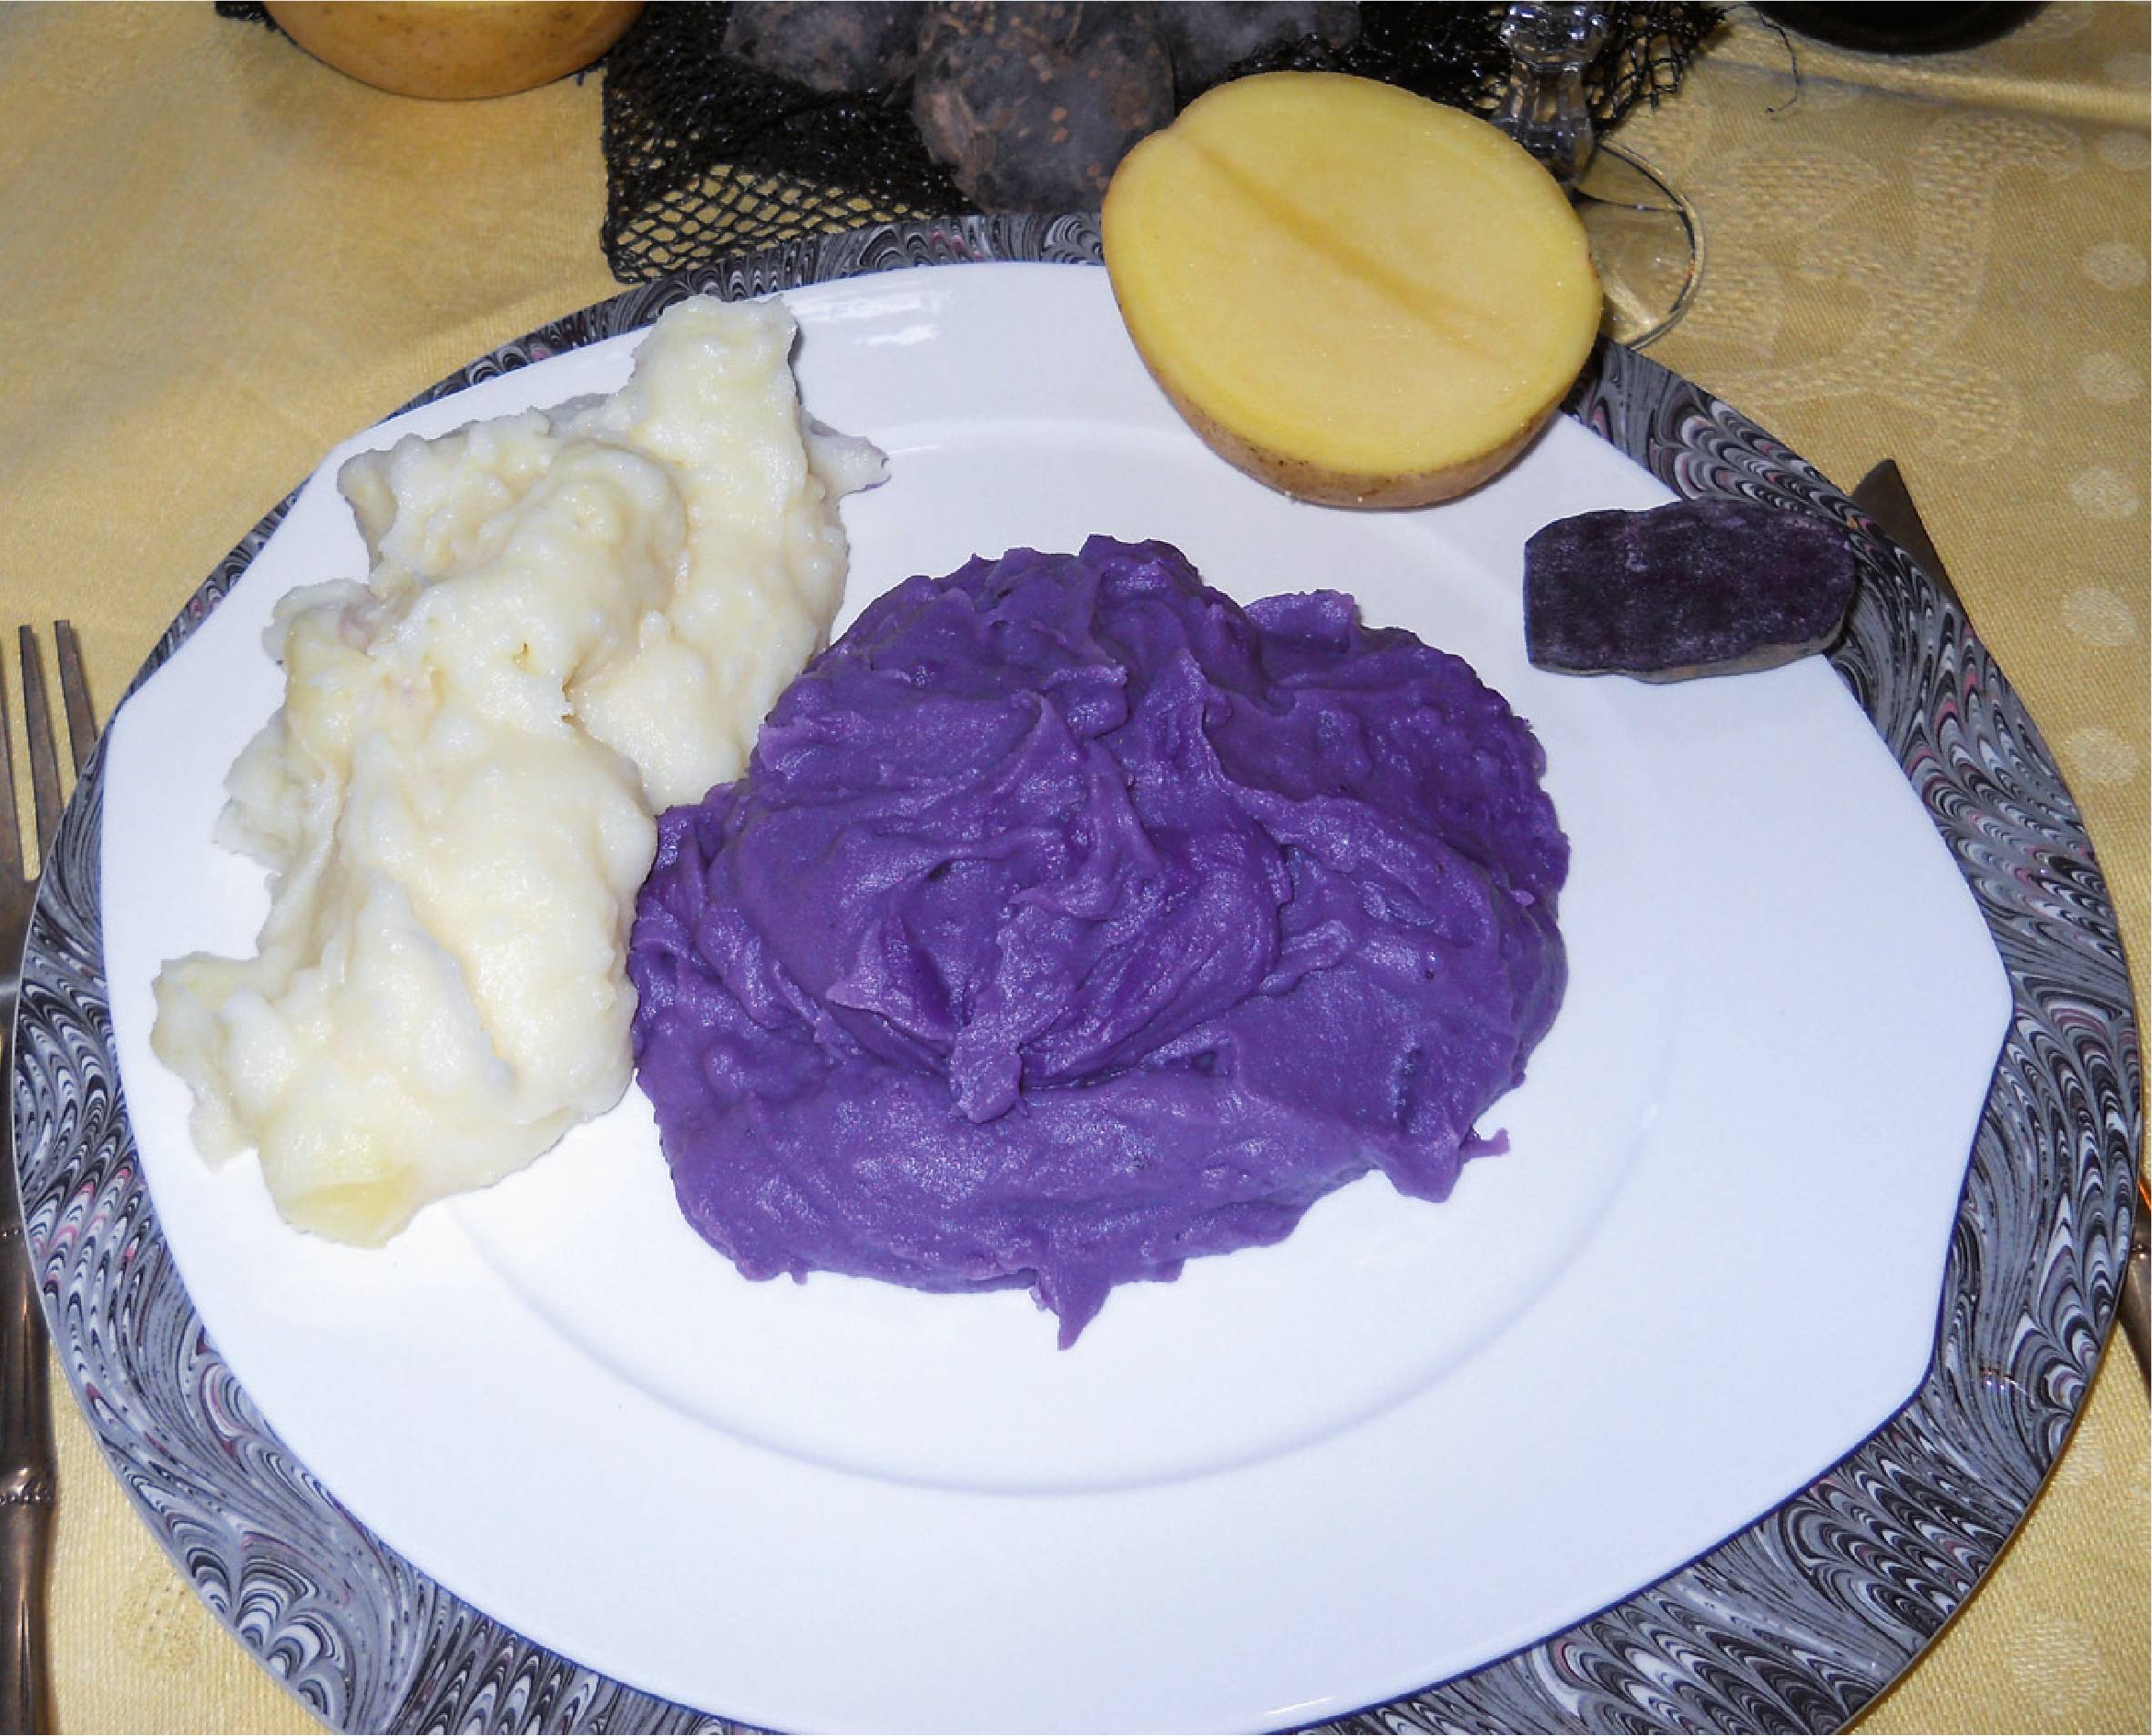 Purè di patate viola Lady Viola Vitelotte - Prodotti alimentari biologici,  selezione patate viola gourmet, legumi e cereali - Perle della Tuscia